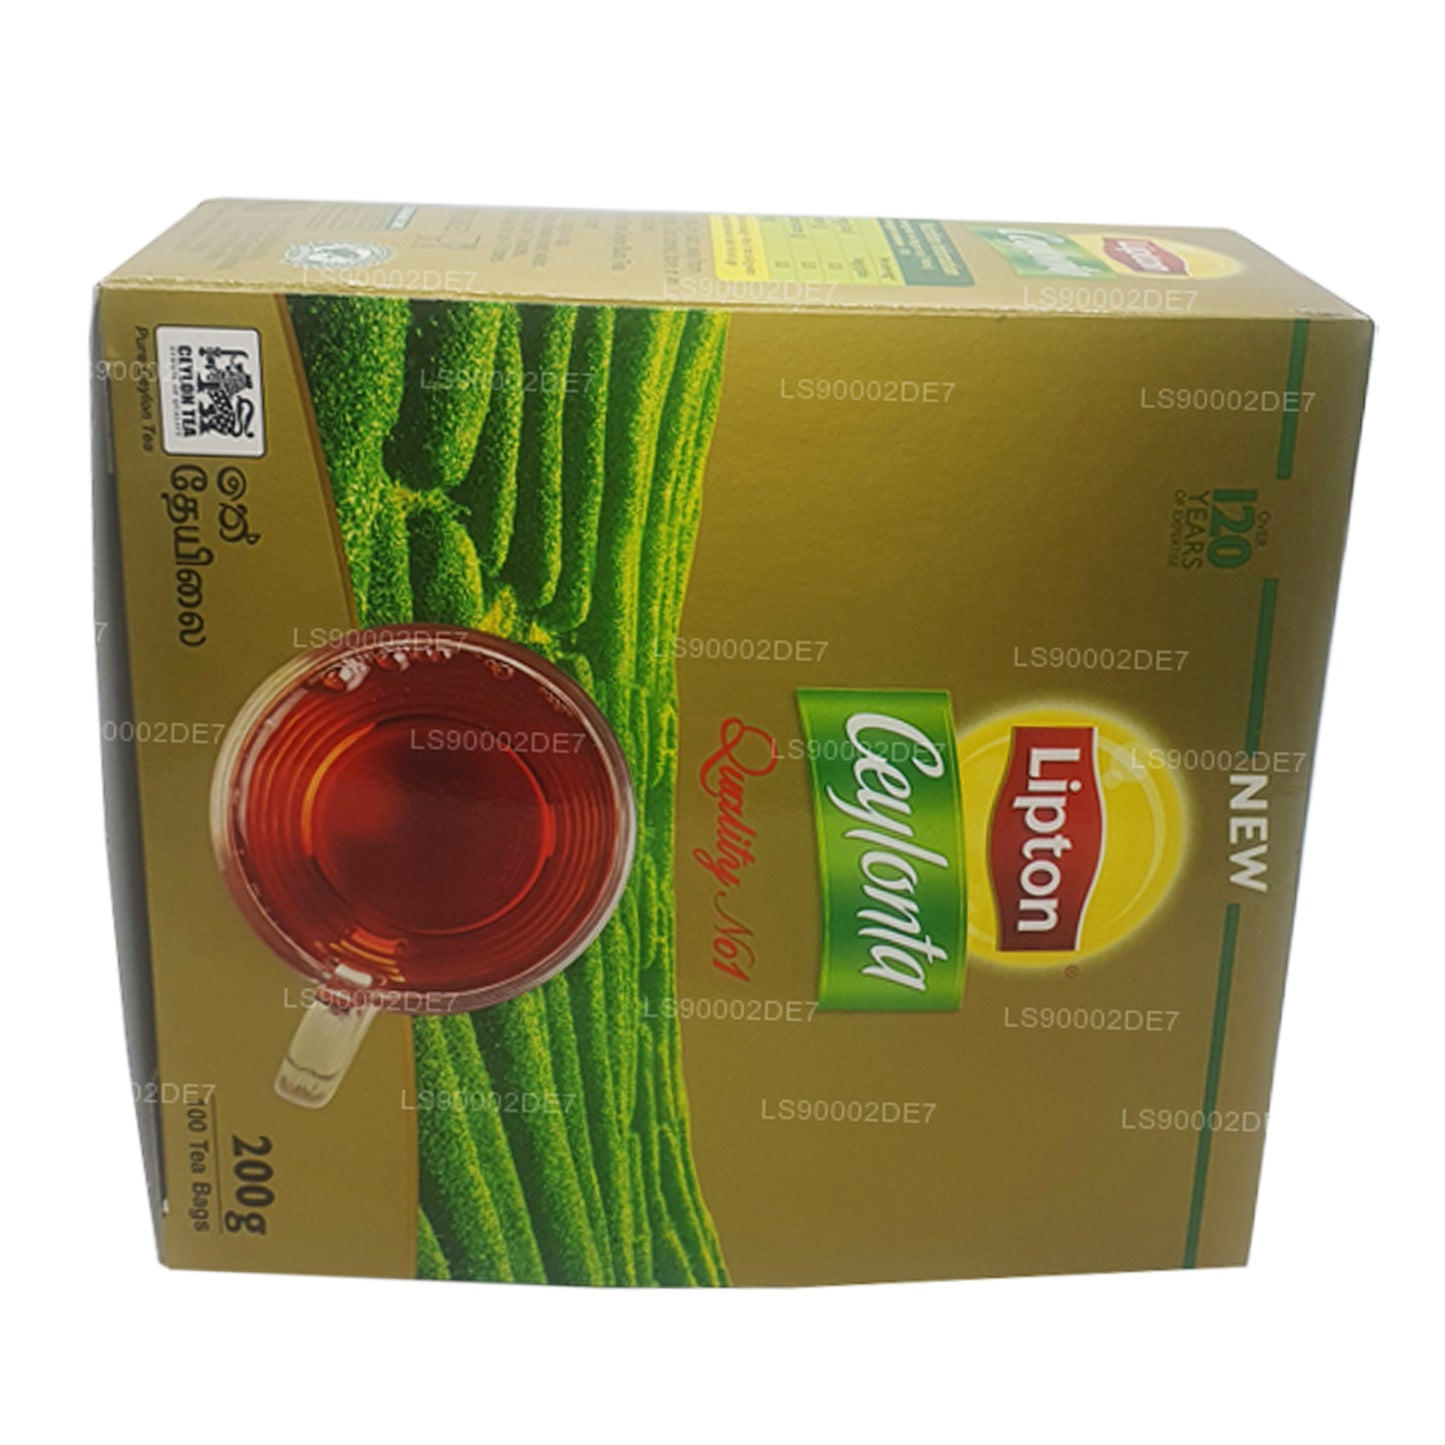 Lipton Ceylonta Tea (200 g) 100 个茶包